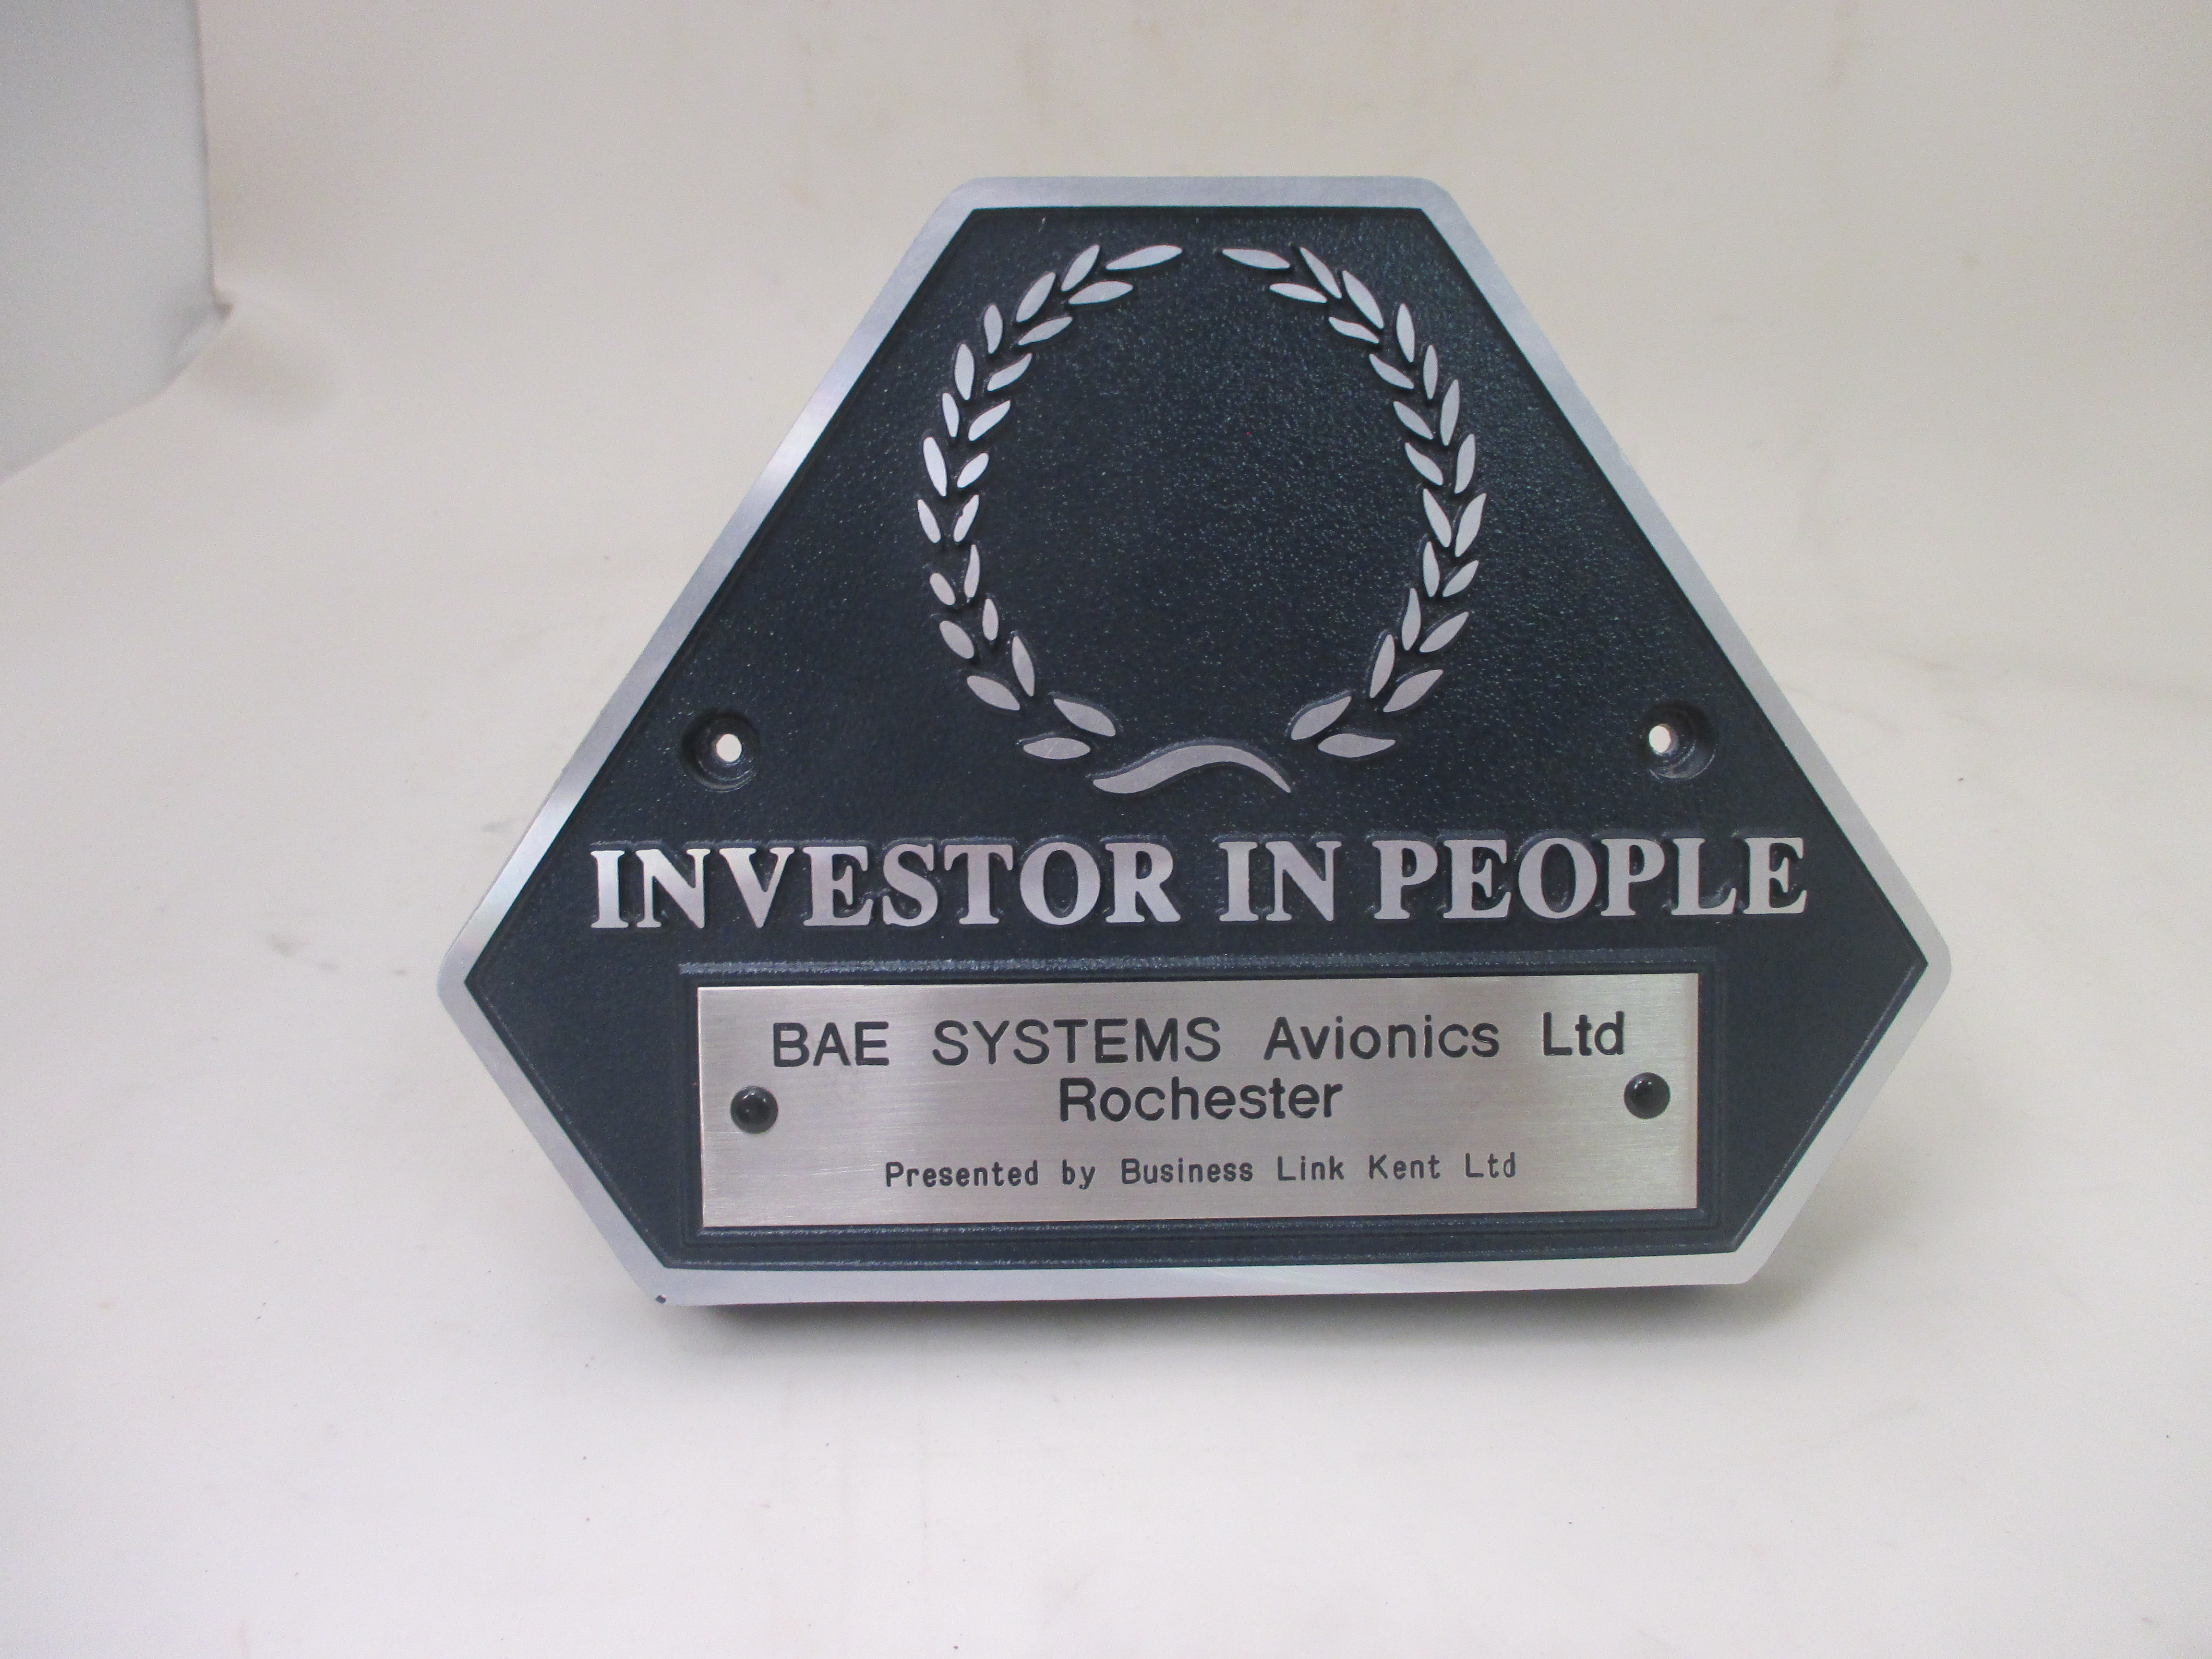 Investor in People award